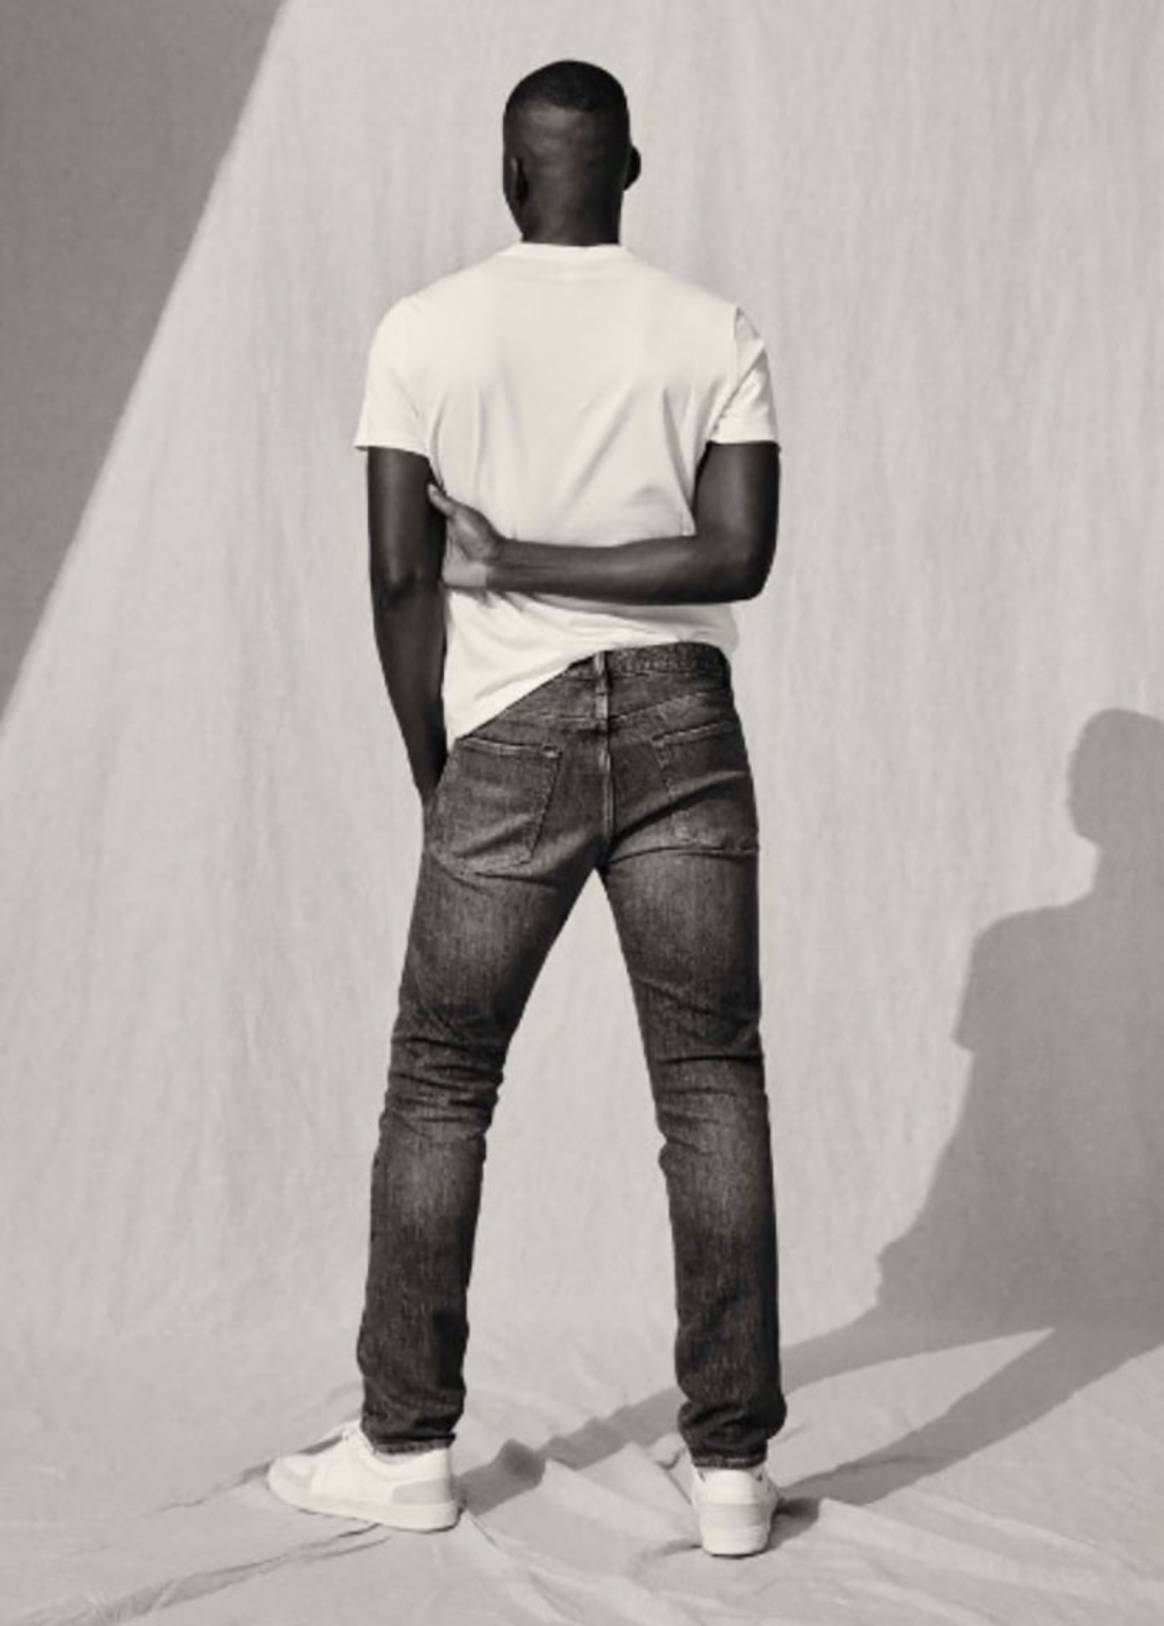 H&M überdenkt Denim-Produktion mit neuer Jeans Redesign-Kollektion 